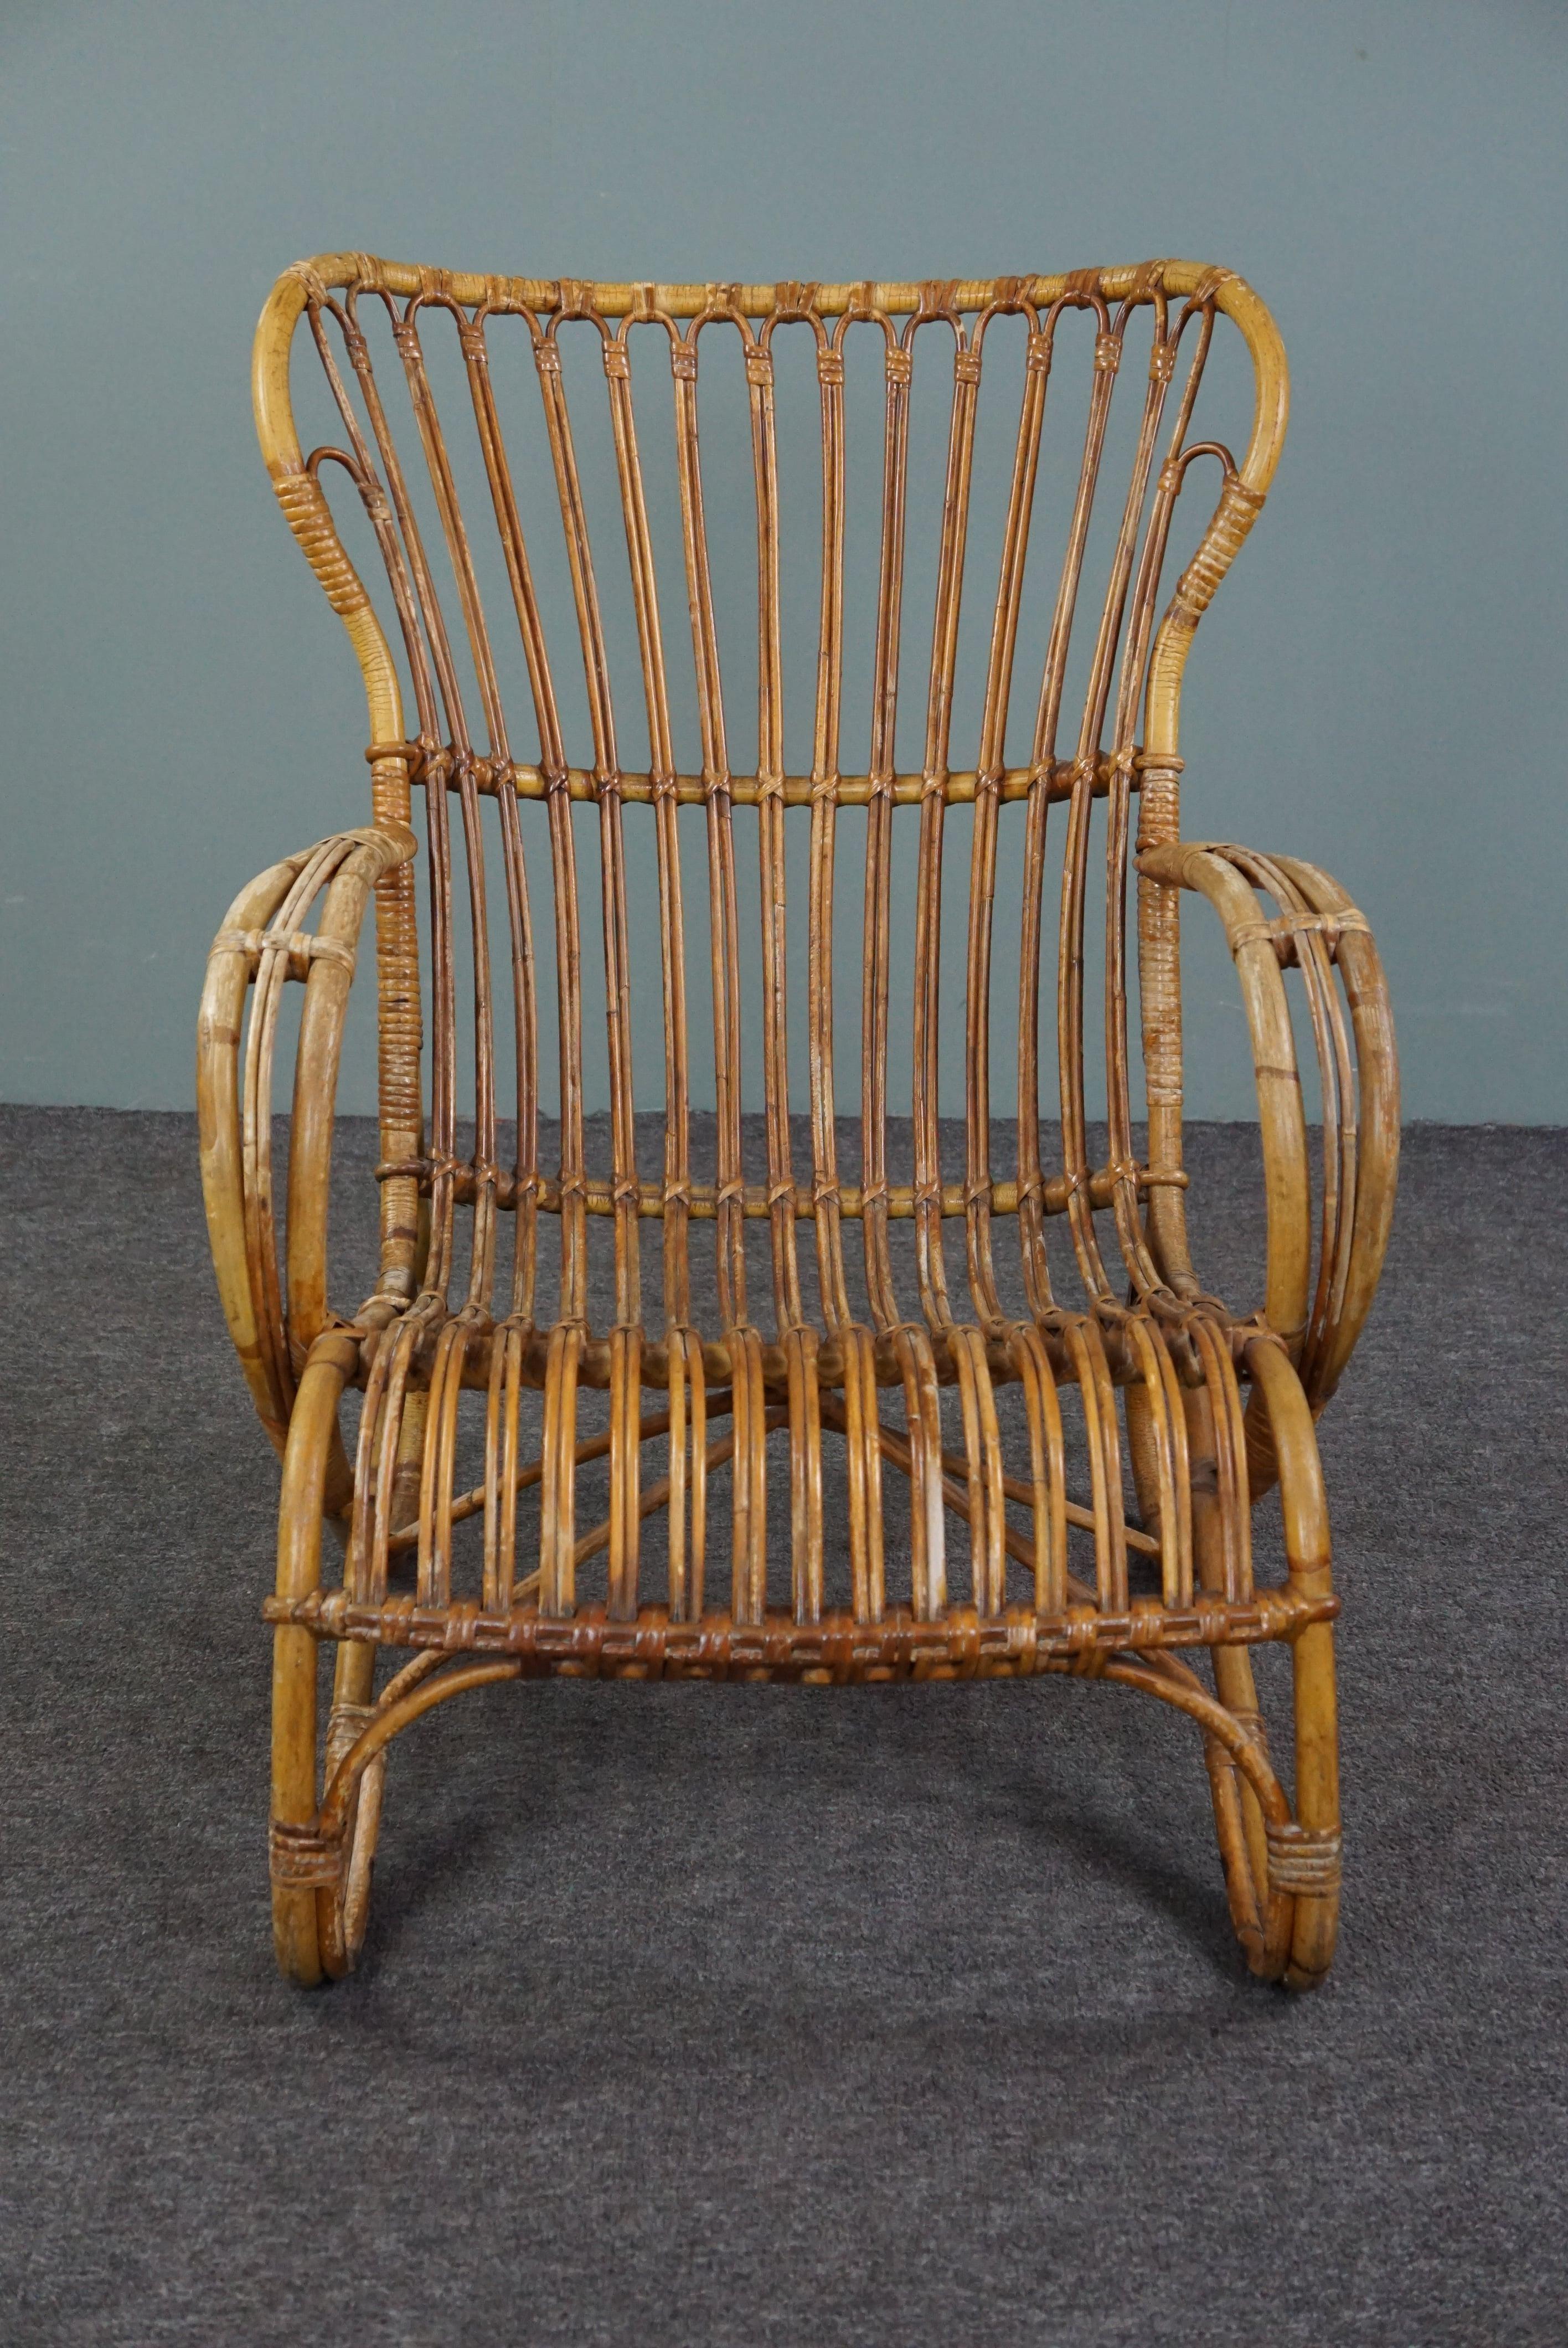 Ce fauteuil Belse 8 en rotin, fabriqué dans les années 1950 aux Pays-Bas, est d'une grande beauté.

Ce très charmant fauteuil en rotin de couleur chaude présente un beau design subtil et de beaux détails ronds dans le dossier. L'assise de ce